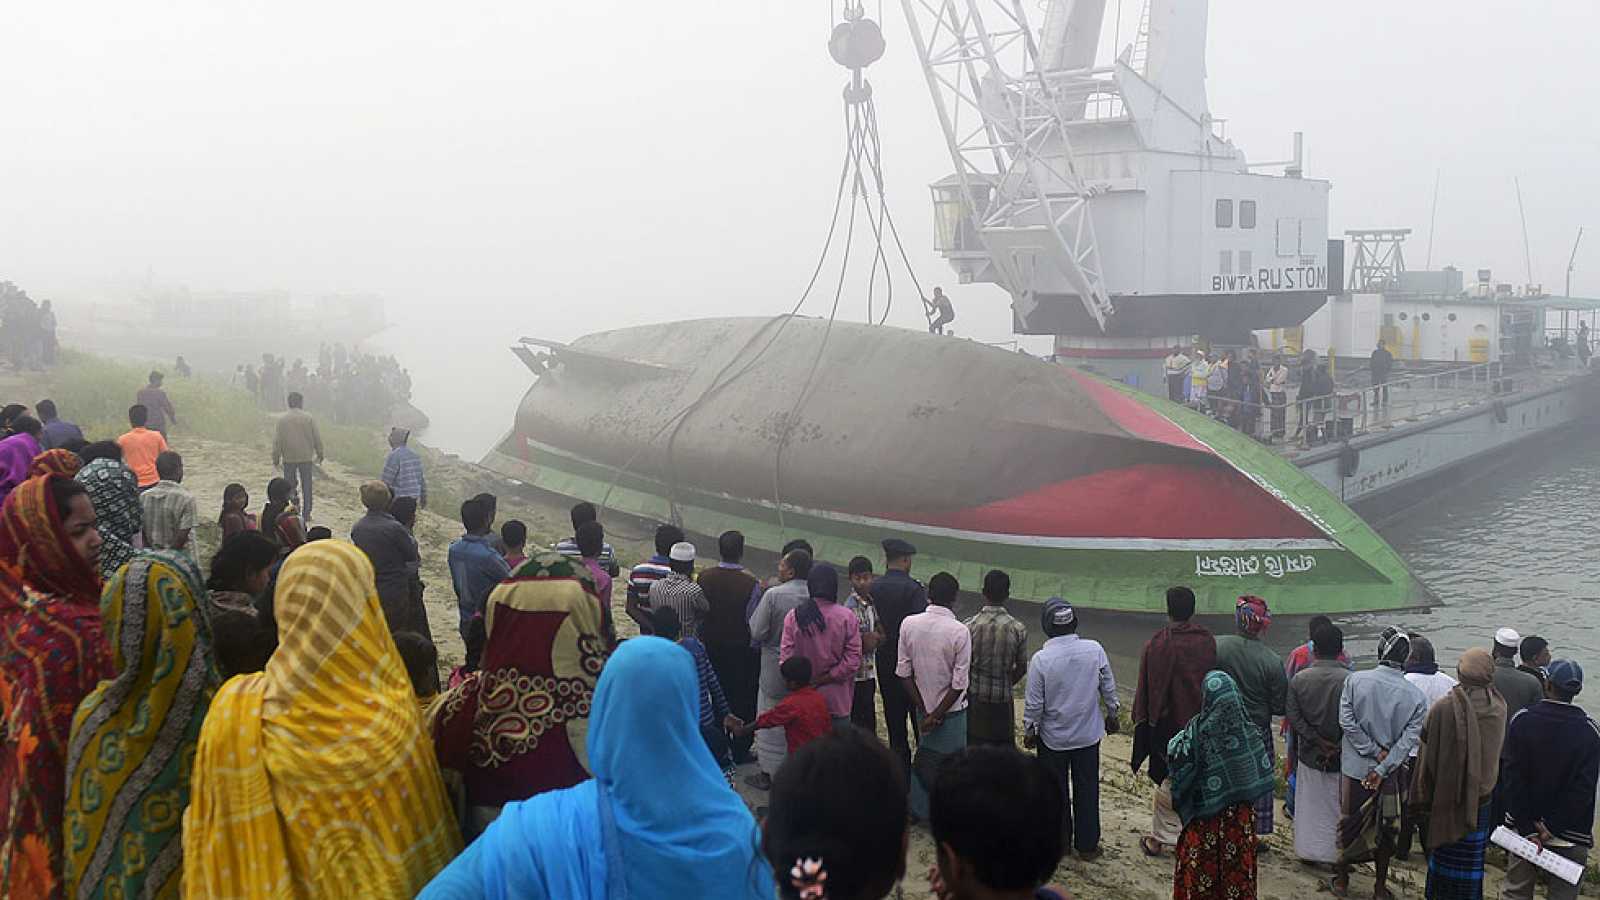 Hundimiento de una embarcación provocó 27 muertos en Bangladés